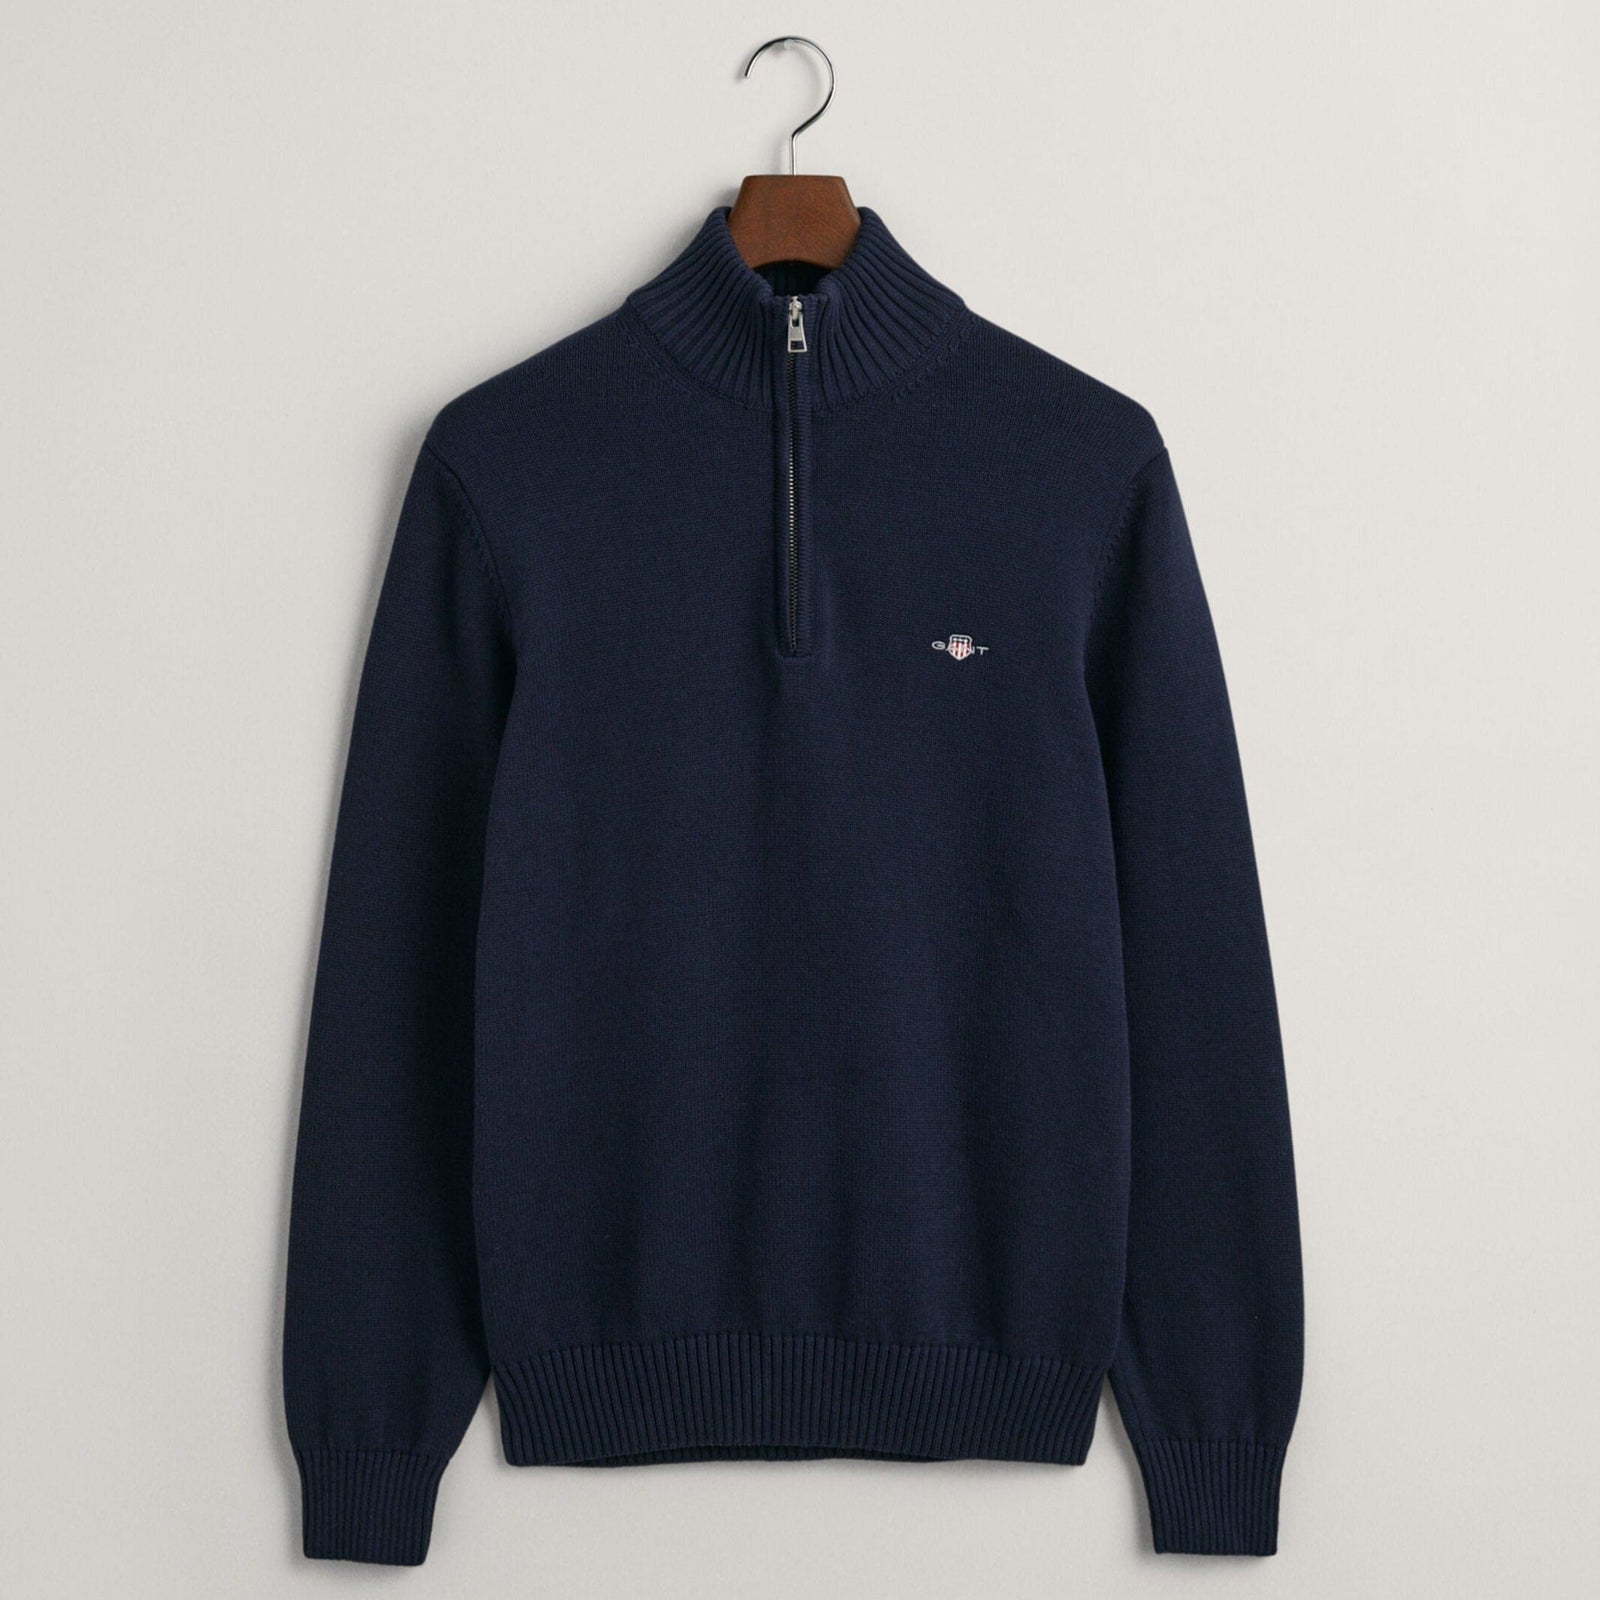 GANT Cotton Half-Zip Sweater in Evening Blue